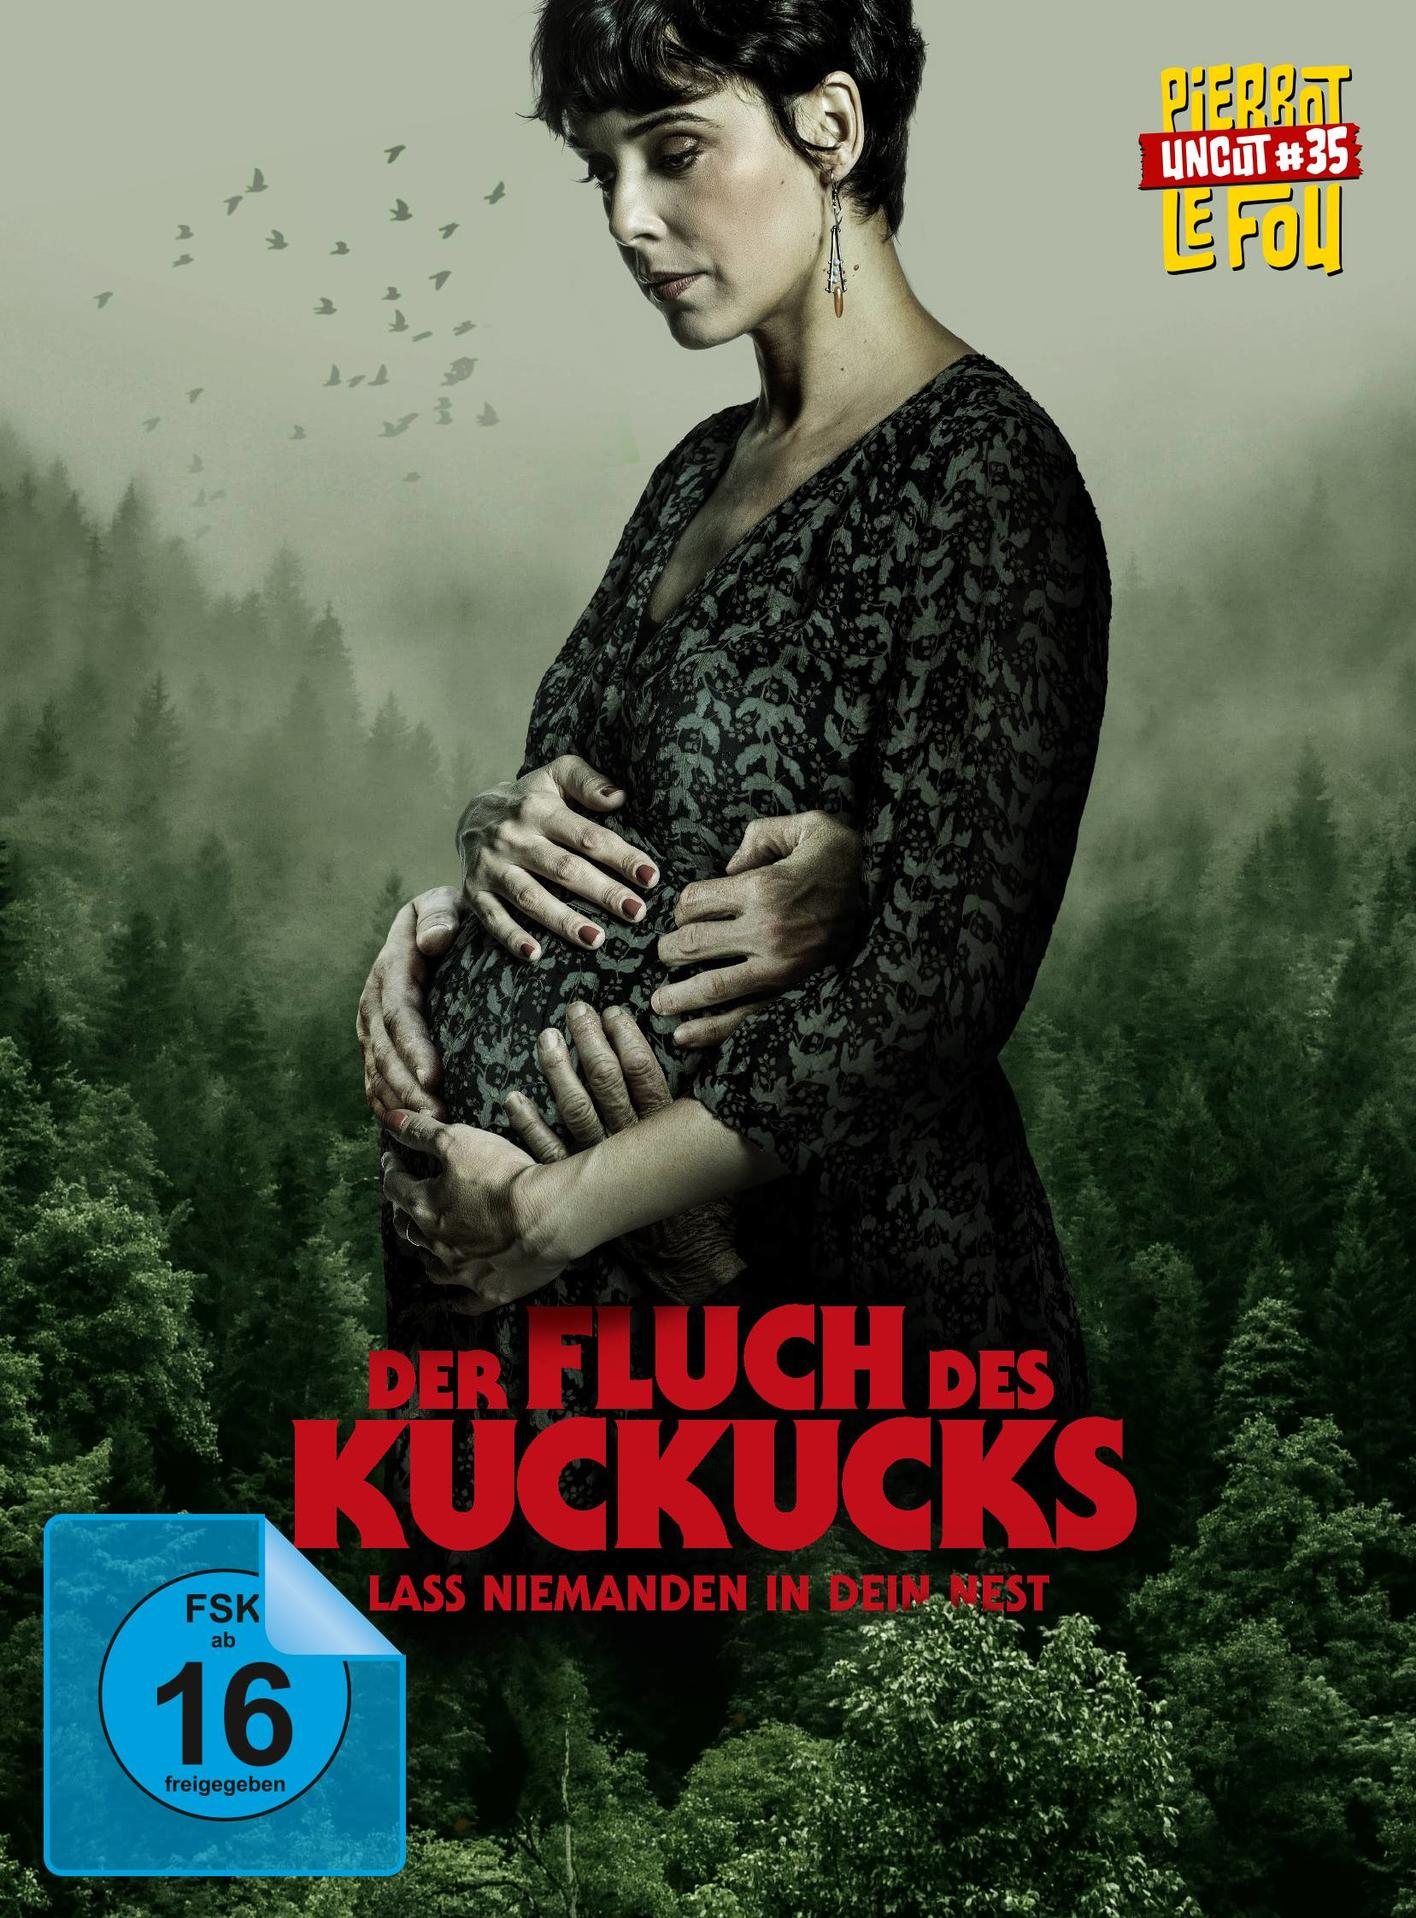 + DVD Kuckucks Blu-ray Fluch in dein Lass des Nest Der - niemanden